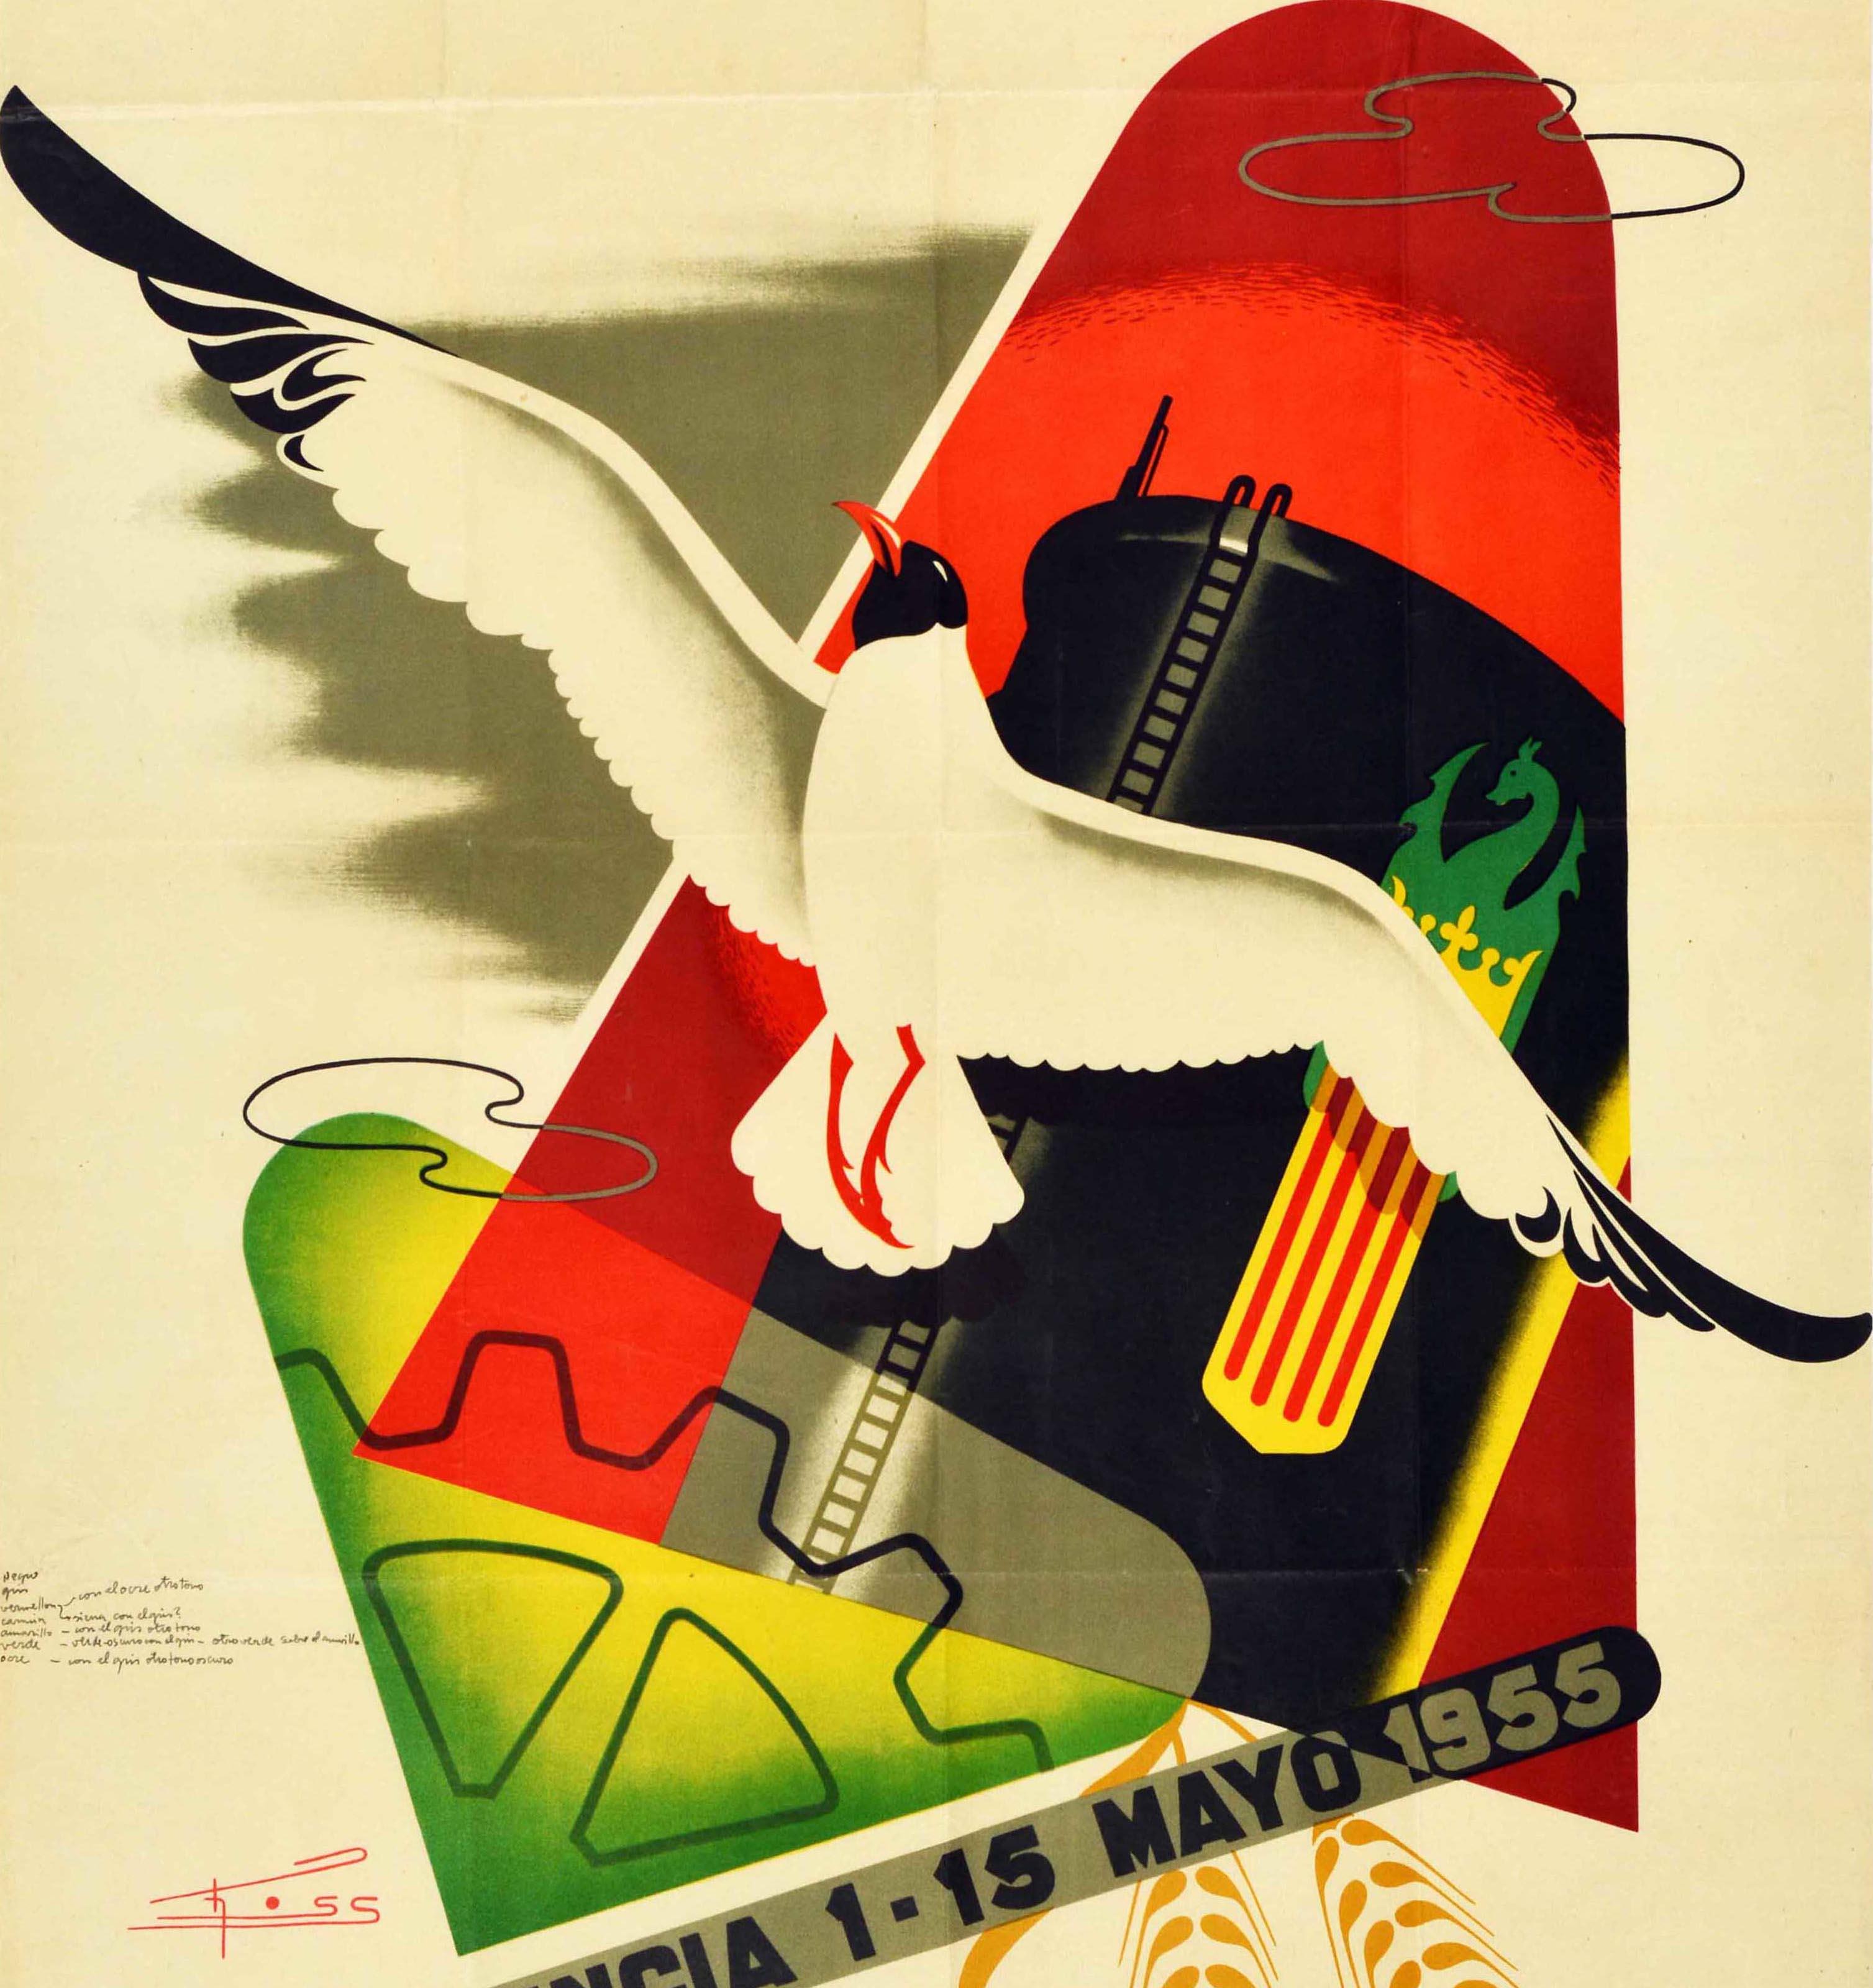 Original-Vintage-Werbeplakat Feria Muestrario Trade Fair Valencia, Spanien – Print von Ross